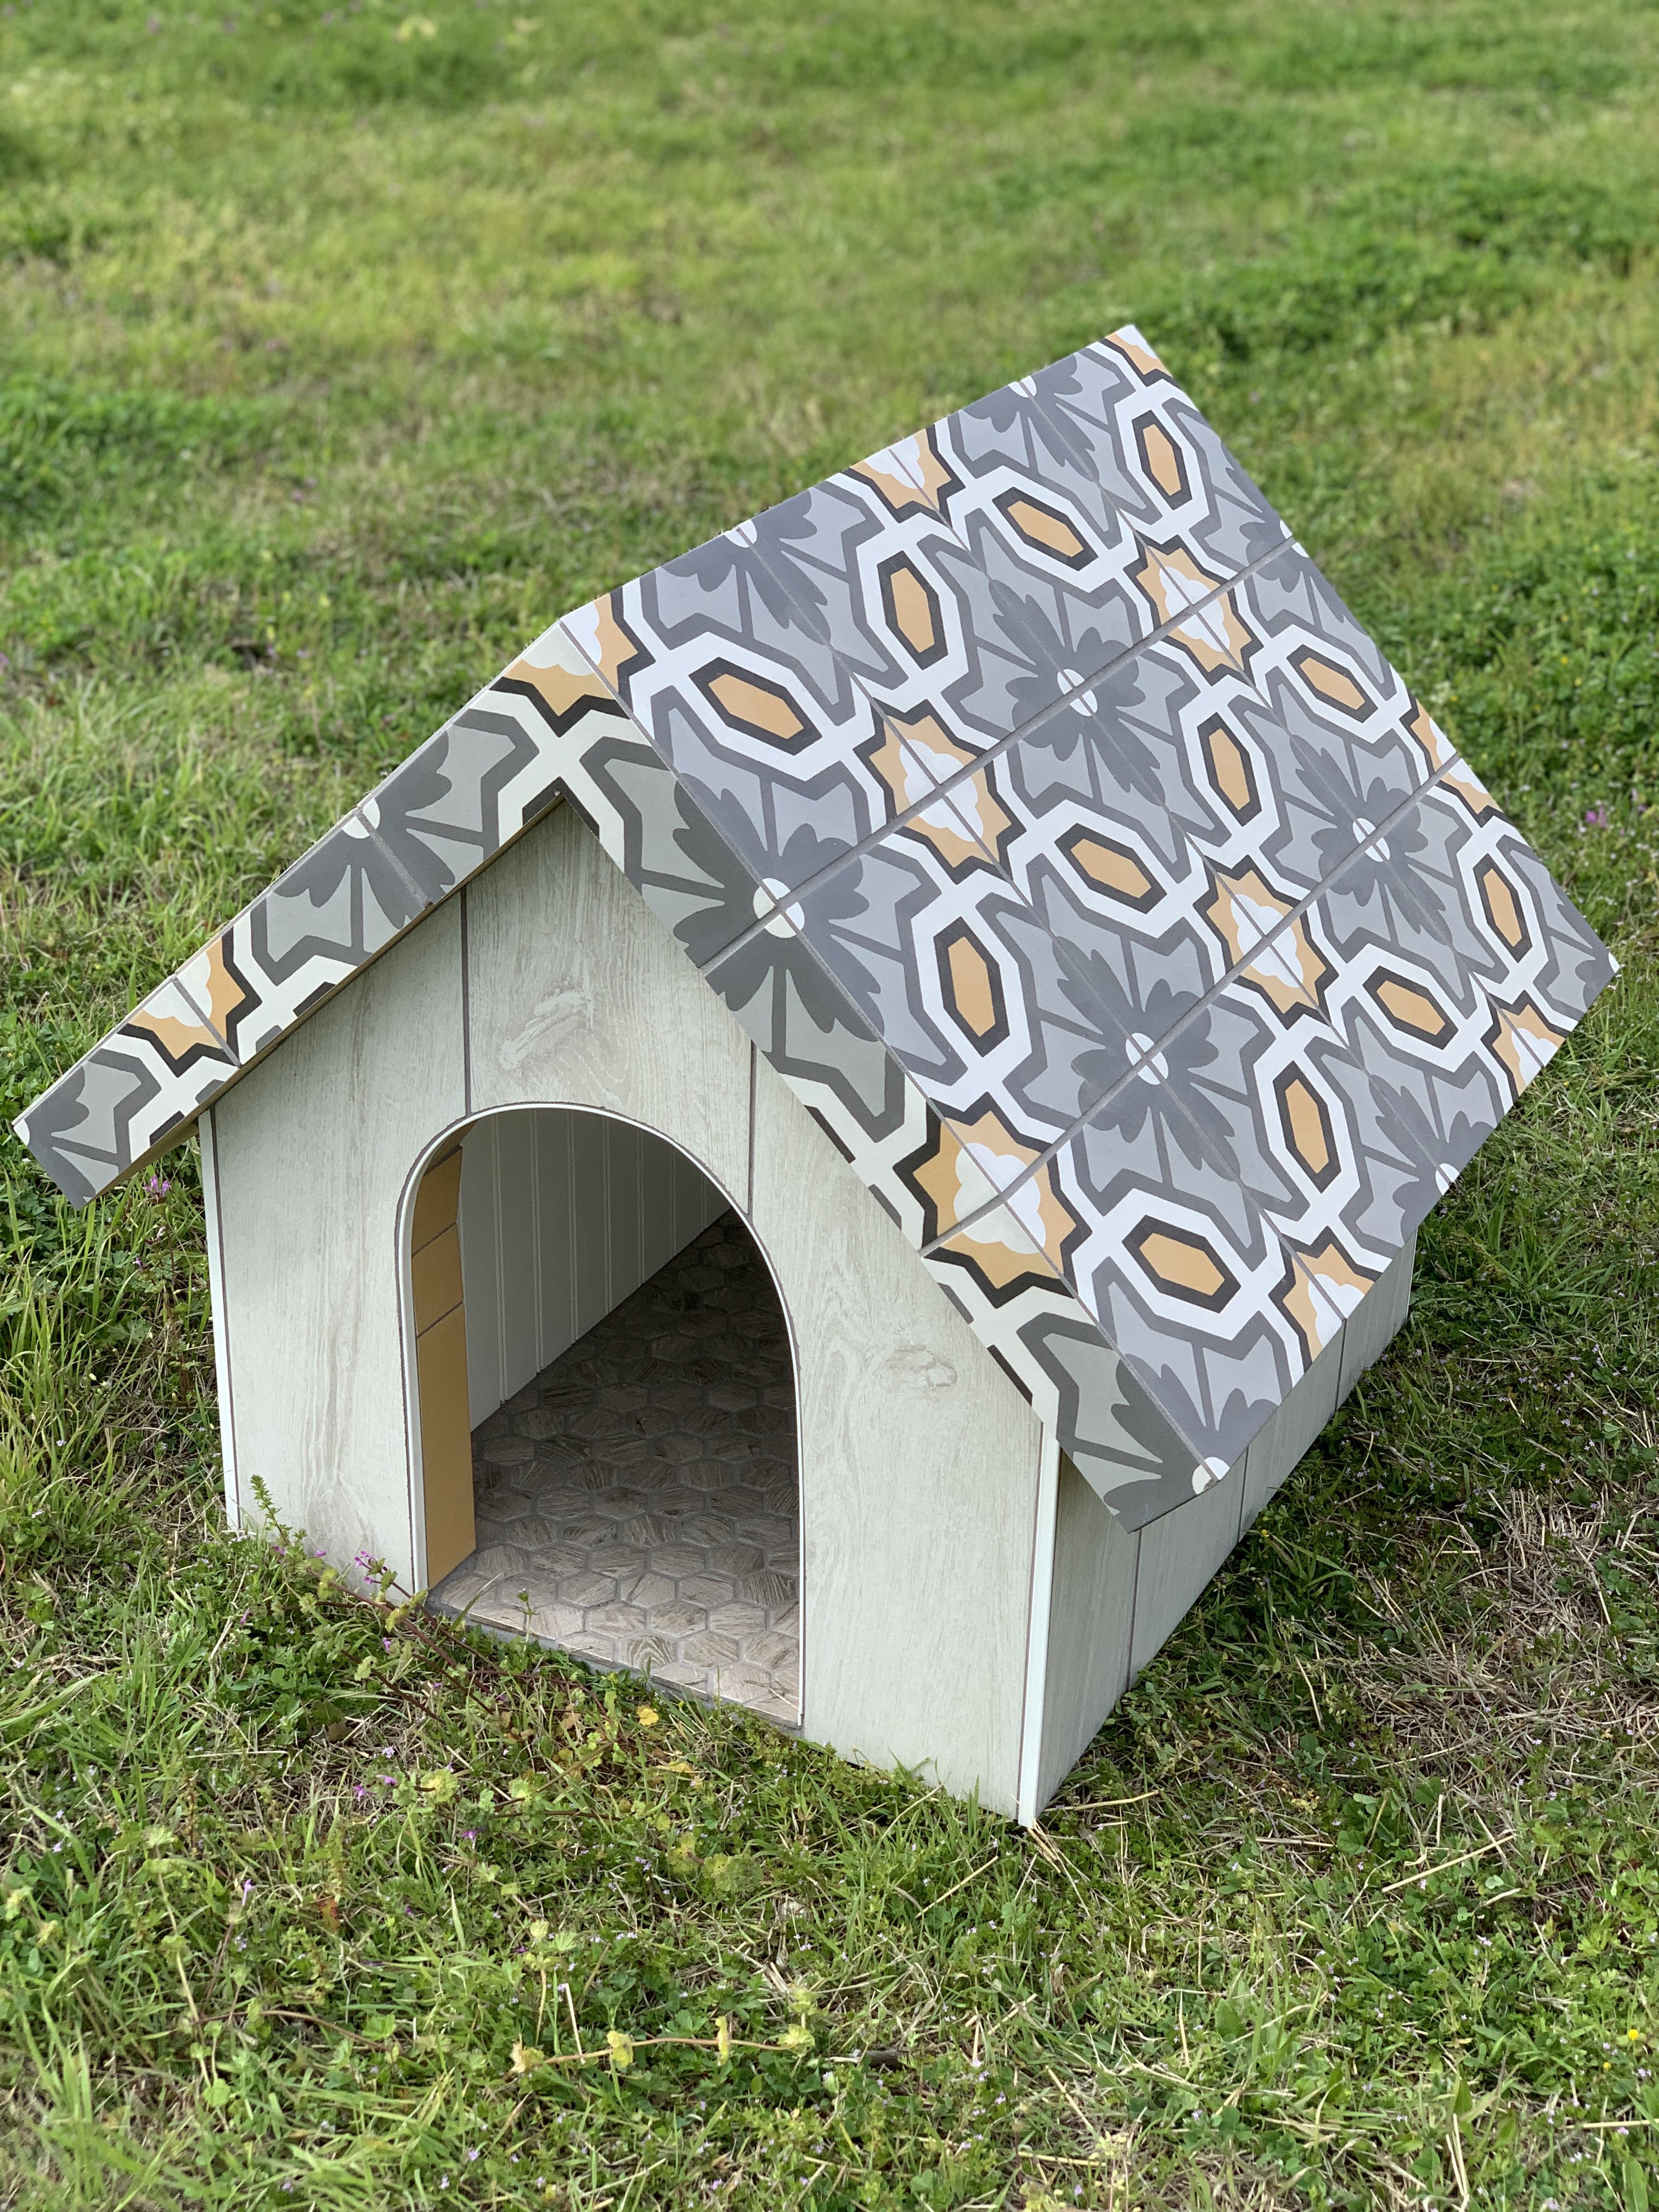 Marazzi, American Olean design charity dog house